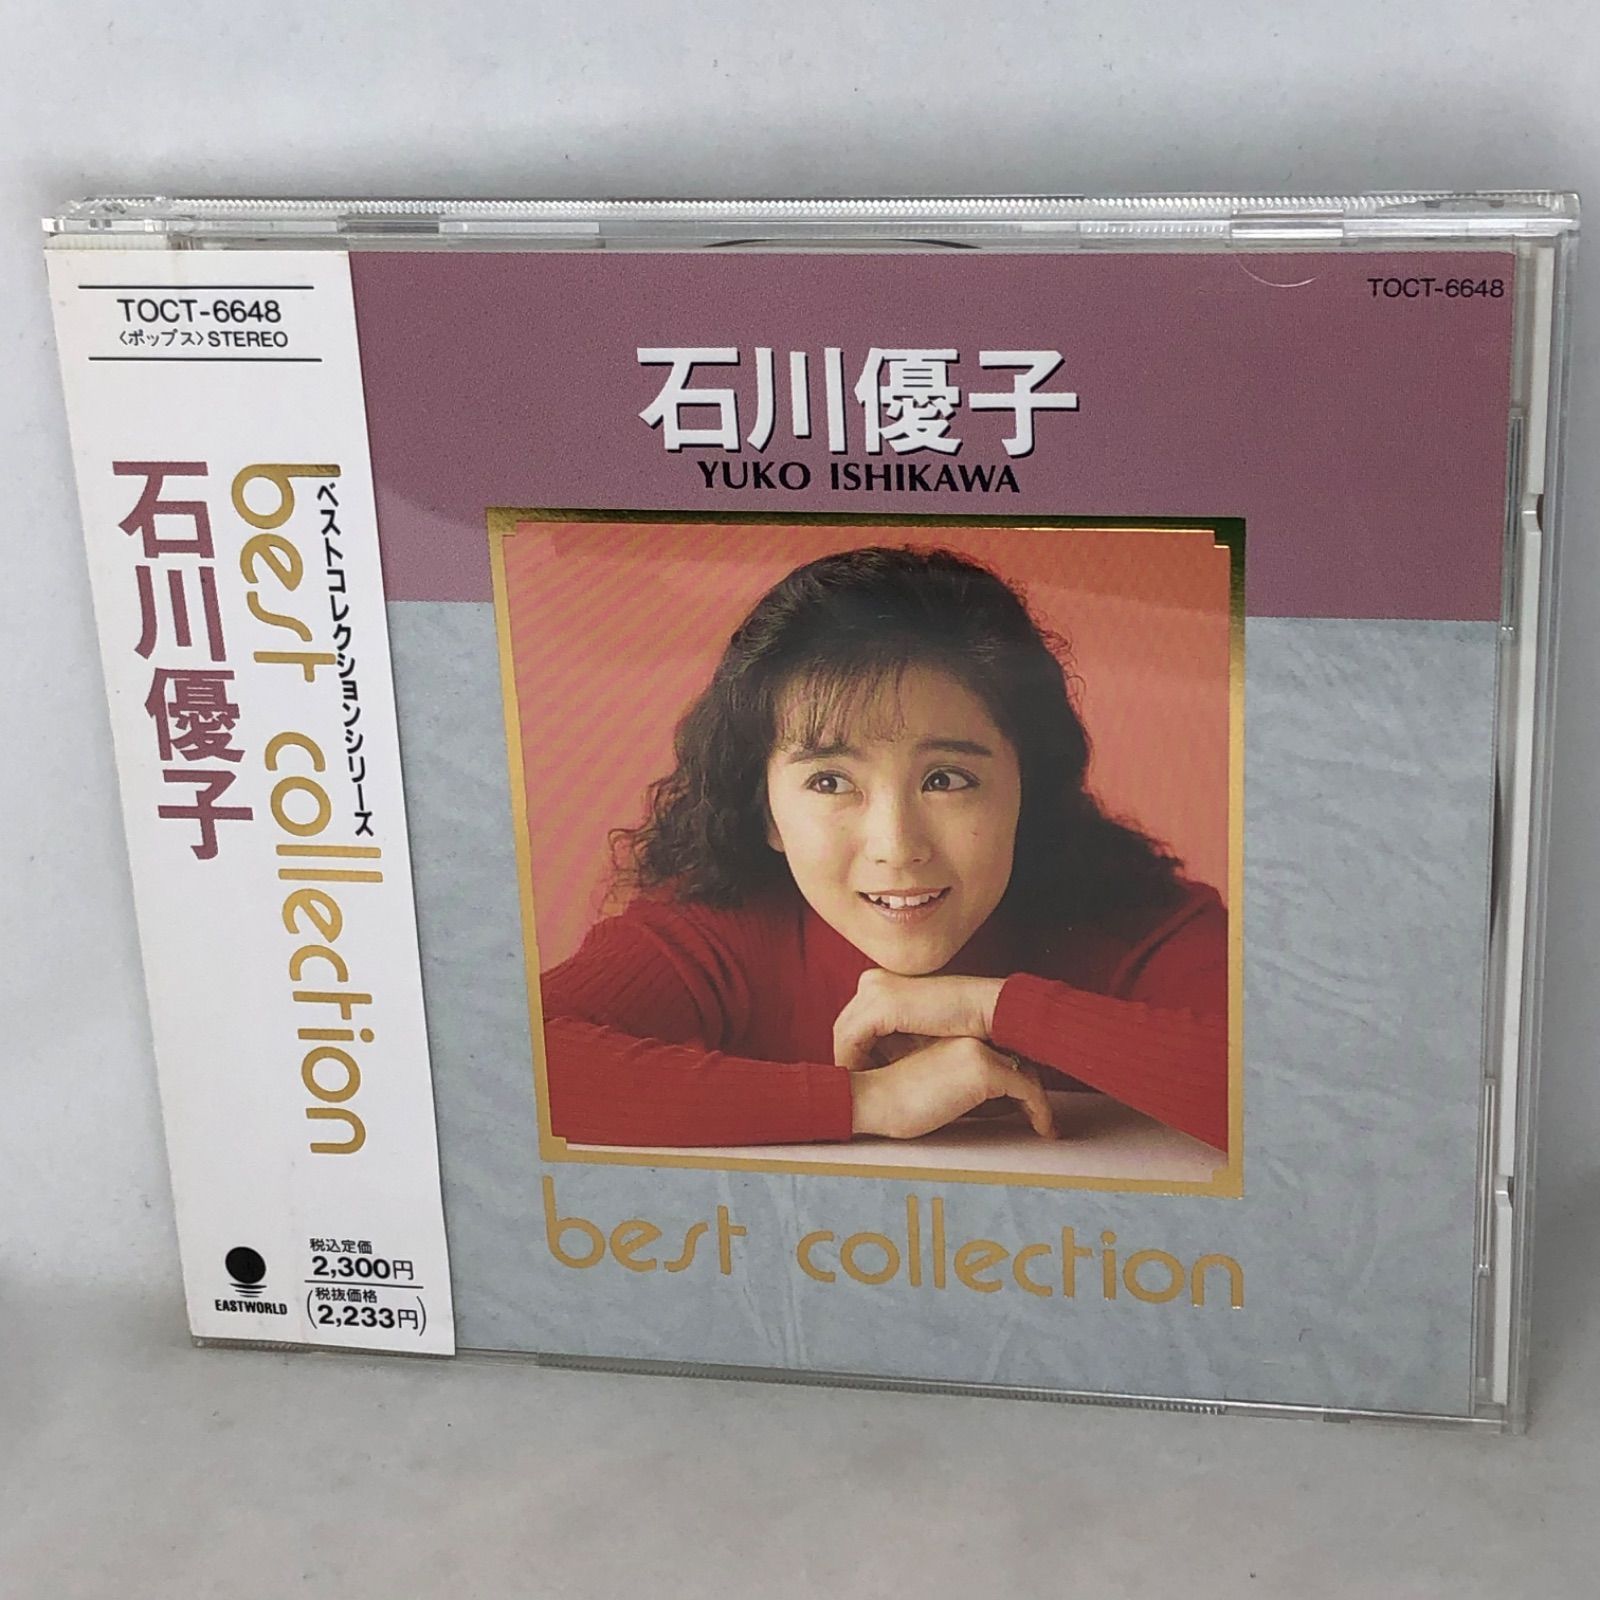 石川優子 / コレクションズ LP レコード-